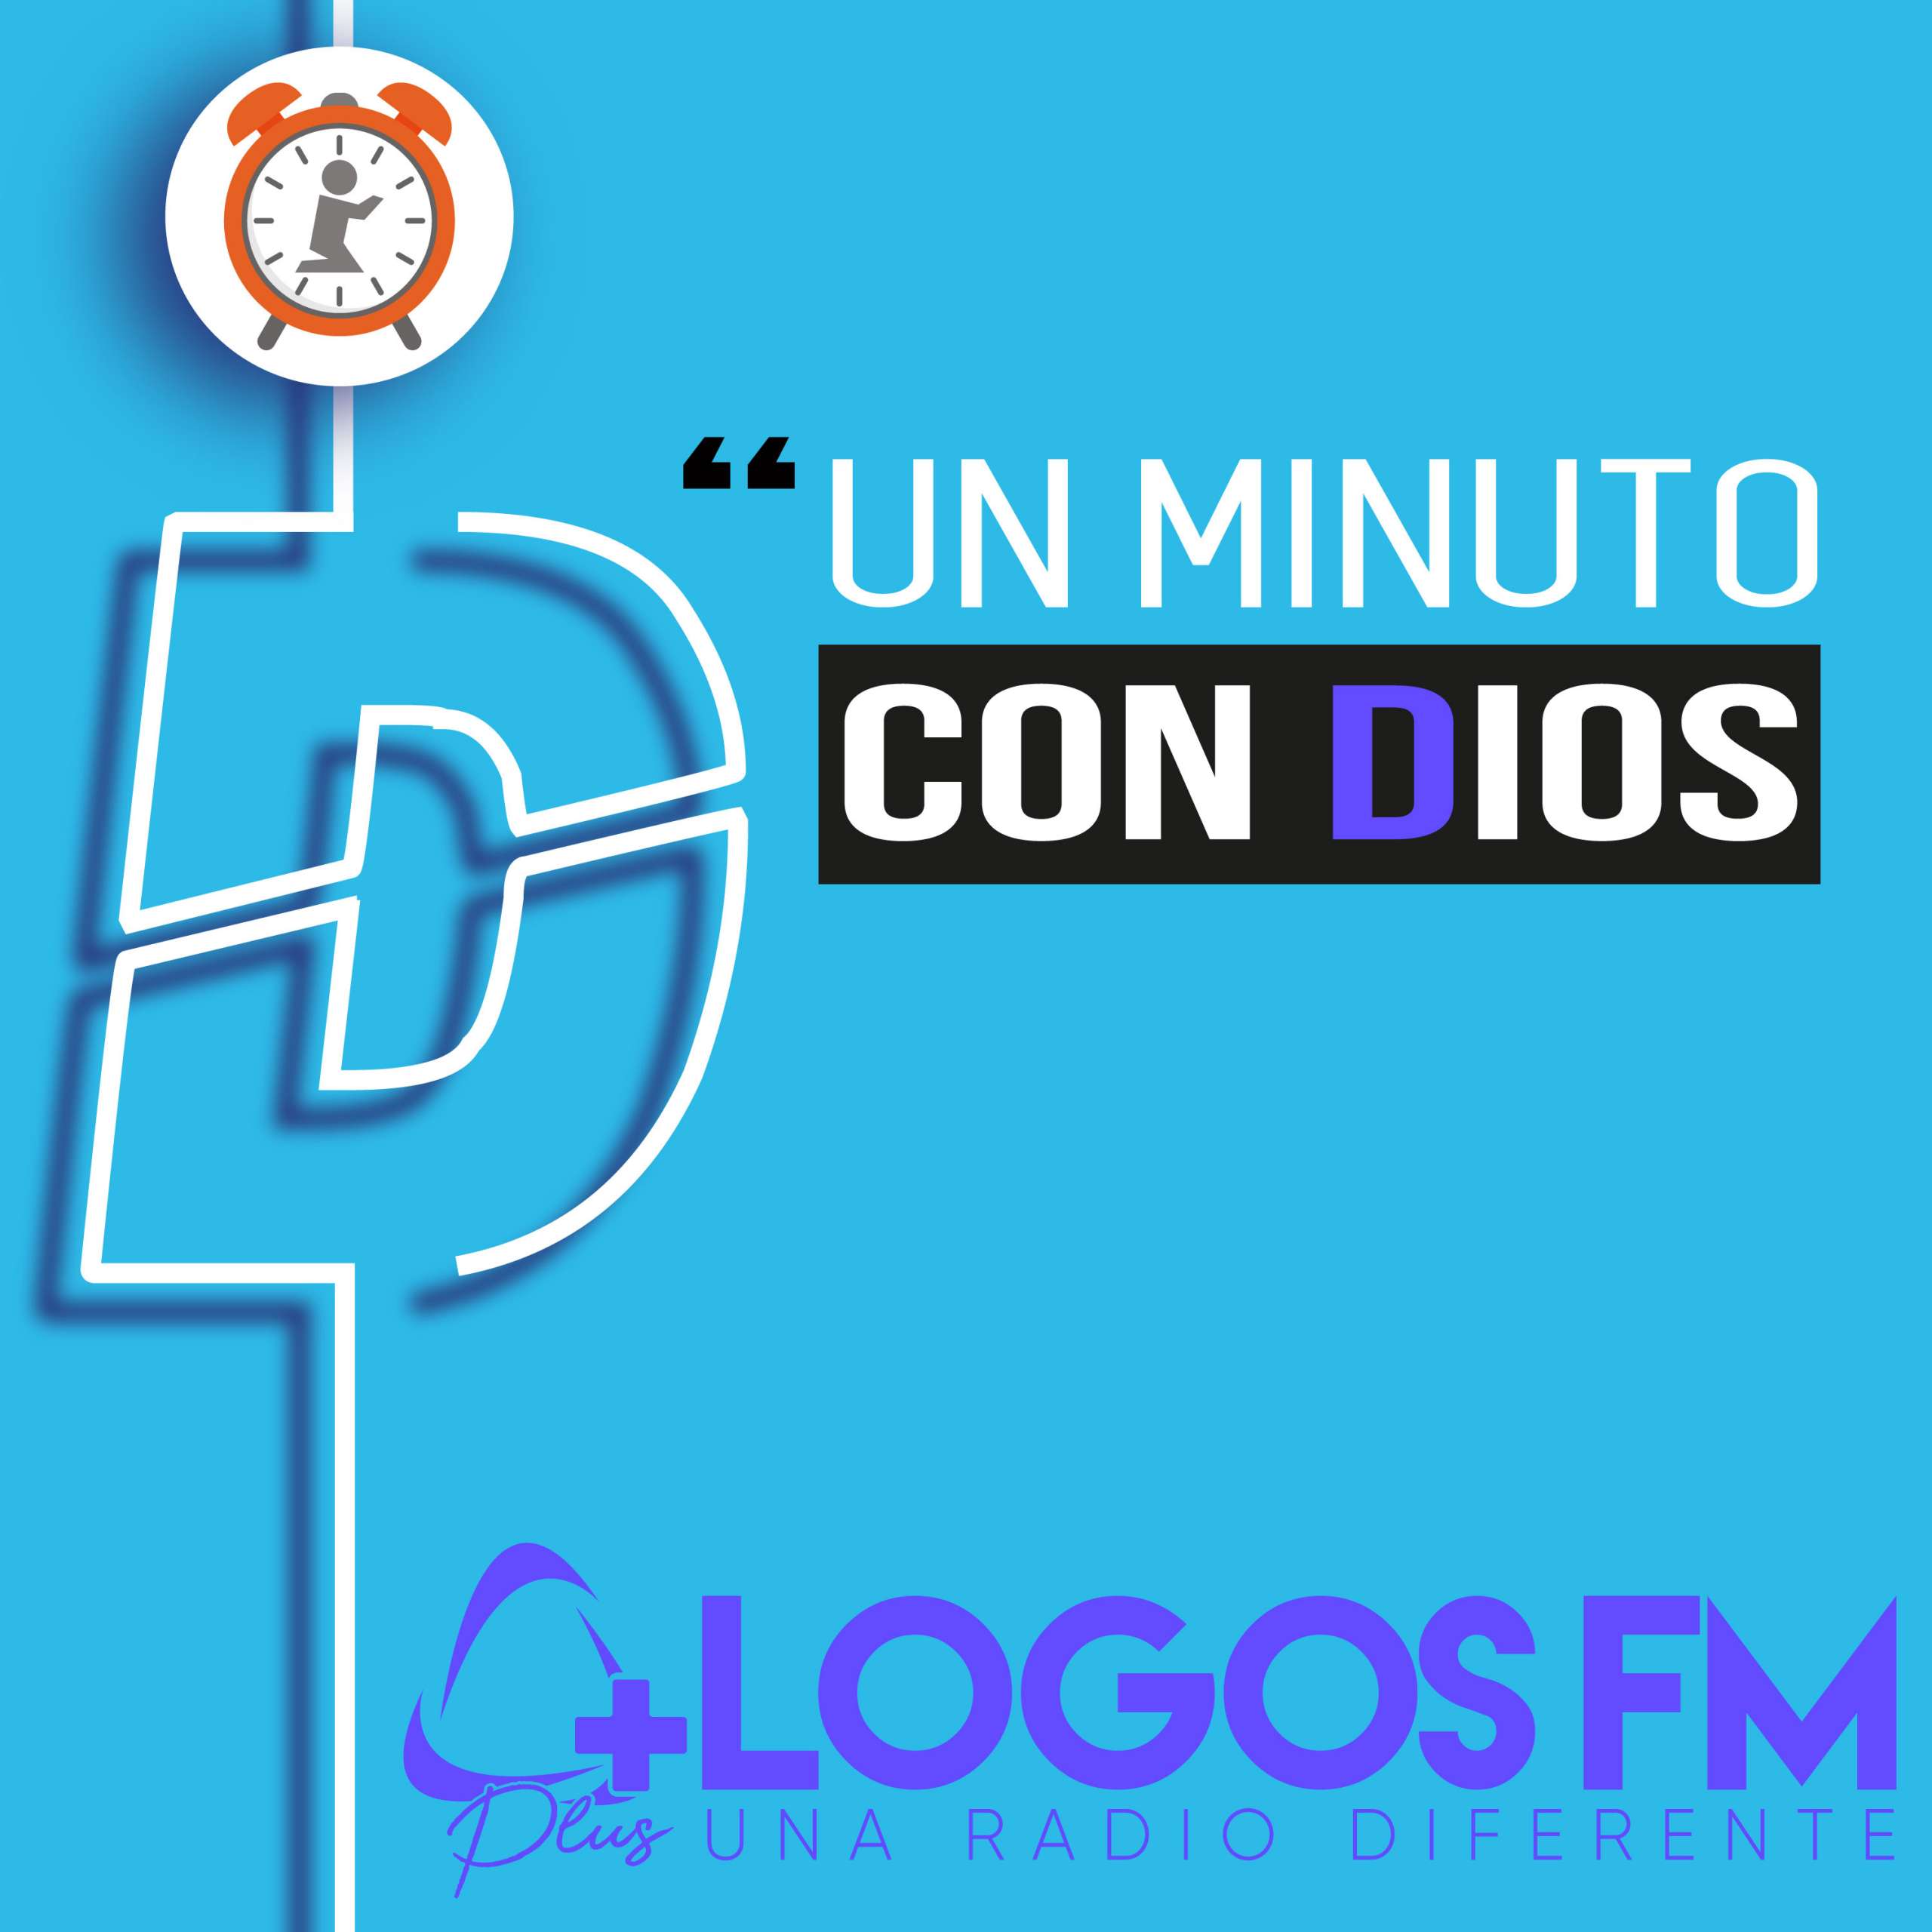 Un minuto con Dios - Episodio 459 - Oniss García